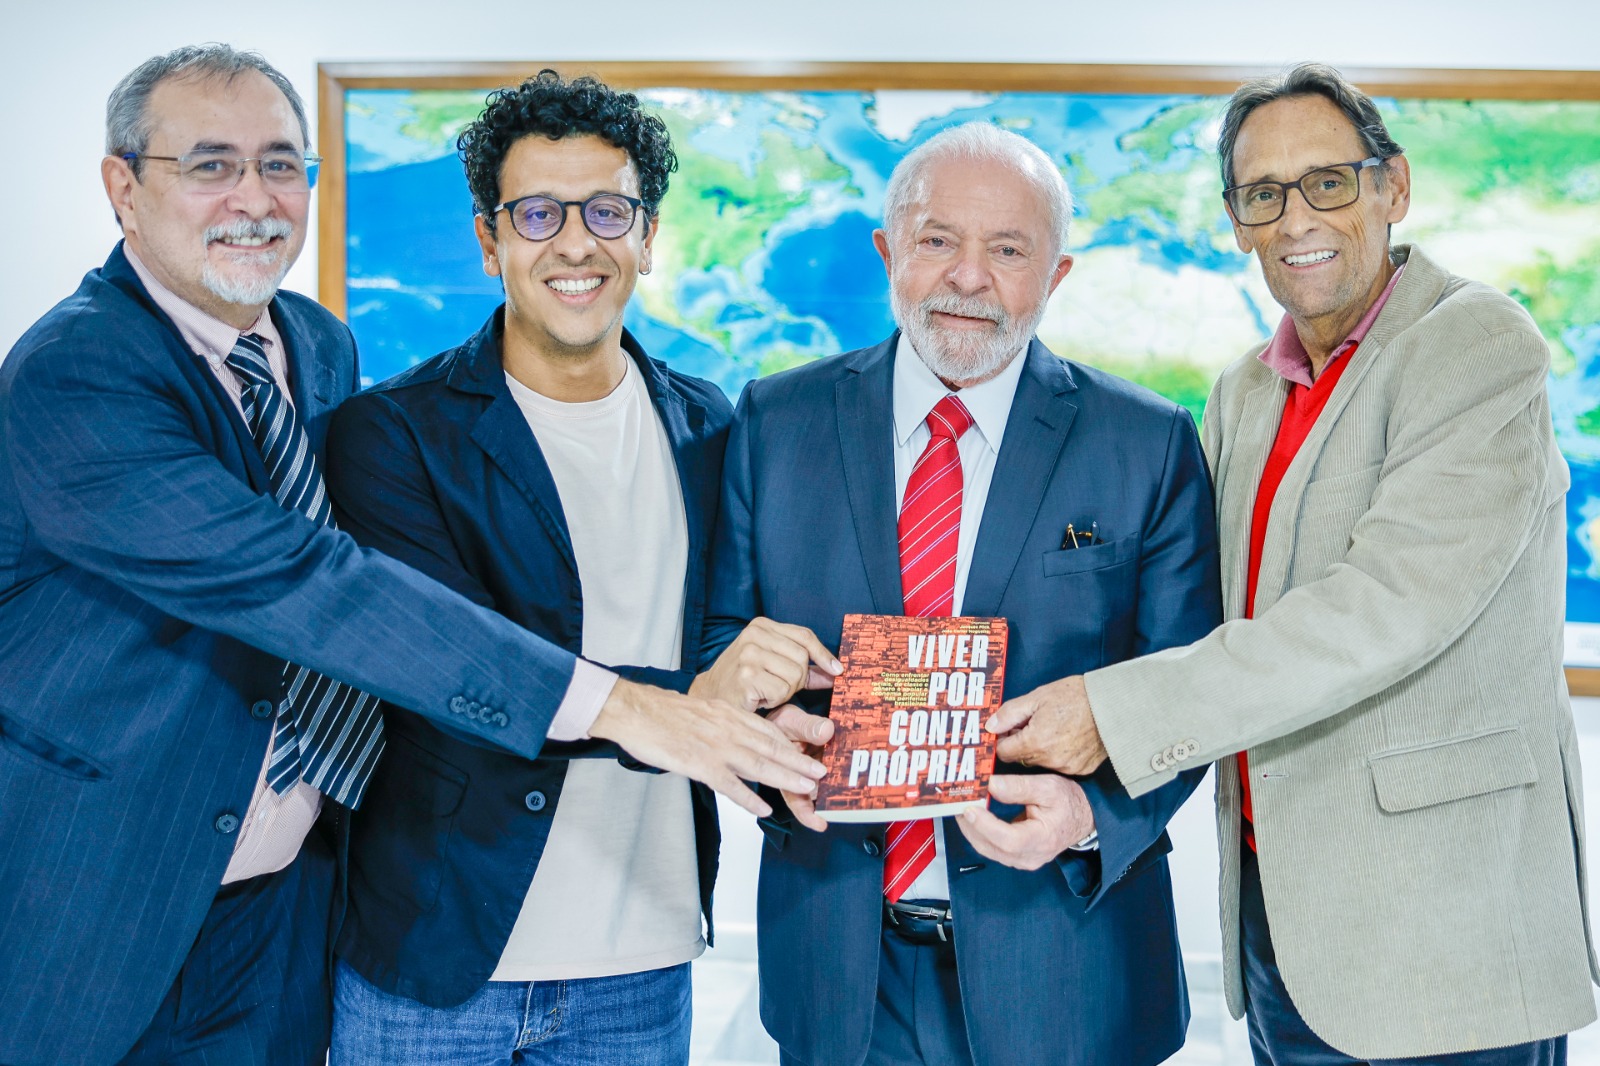 Presidente Lula recebe livro Viver por Conta Própria da Fundação Perseu Abramo